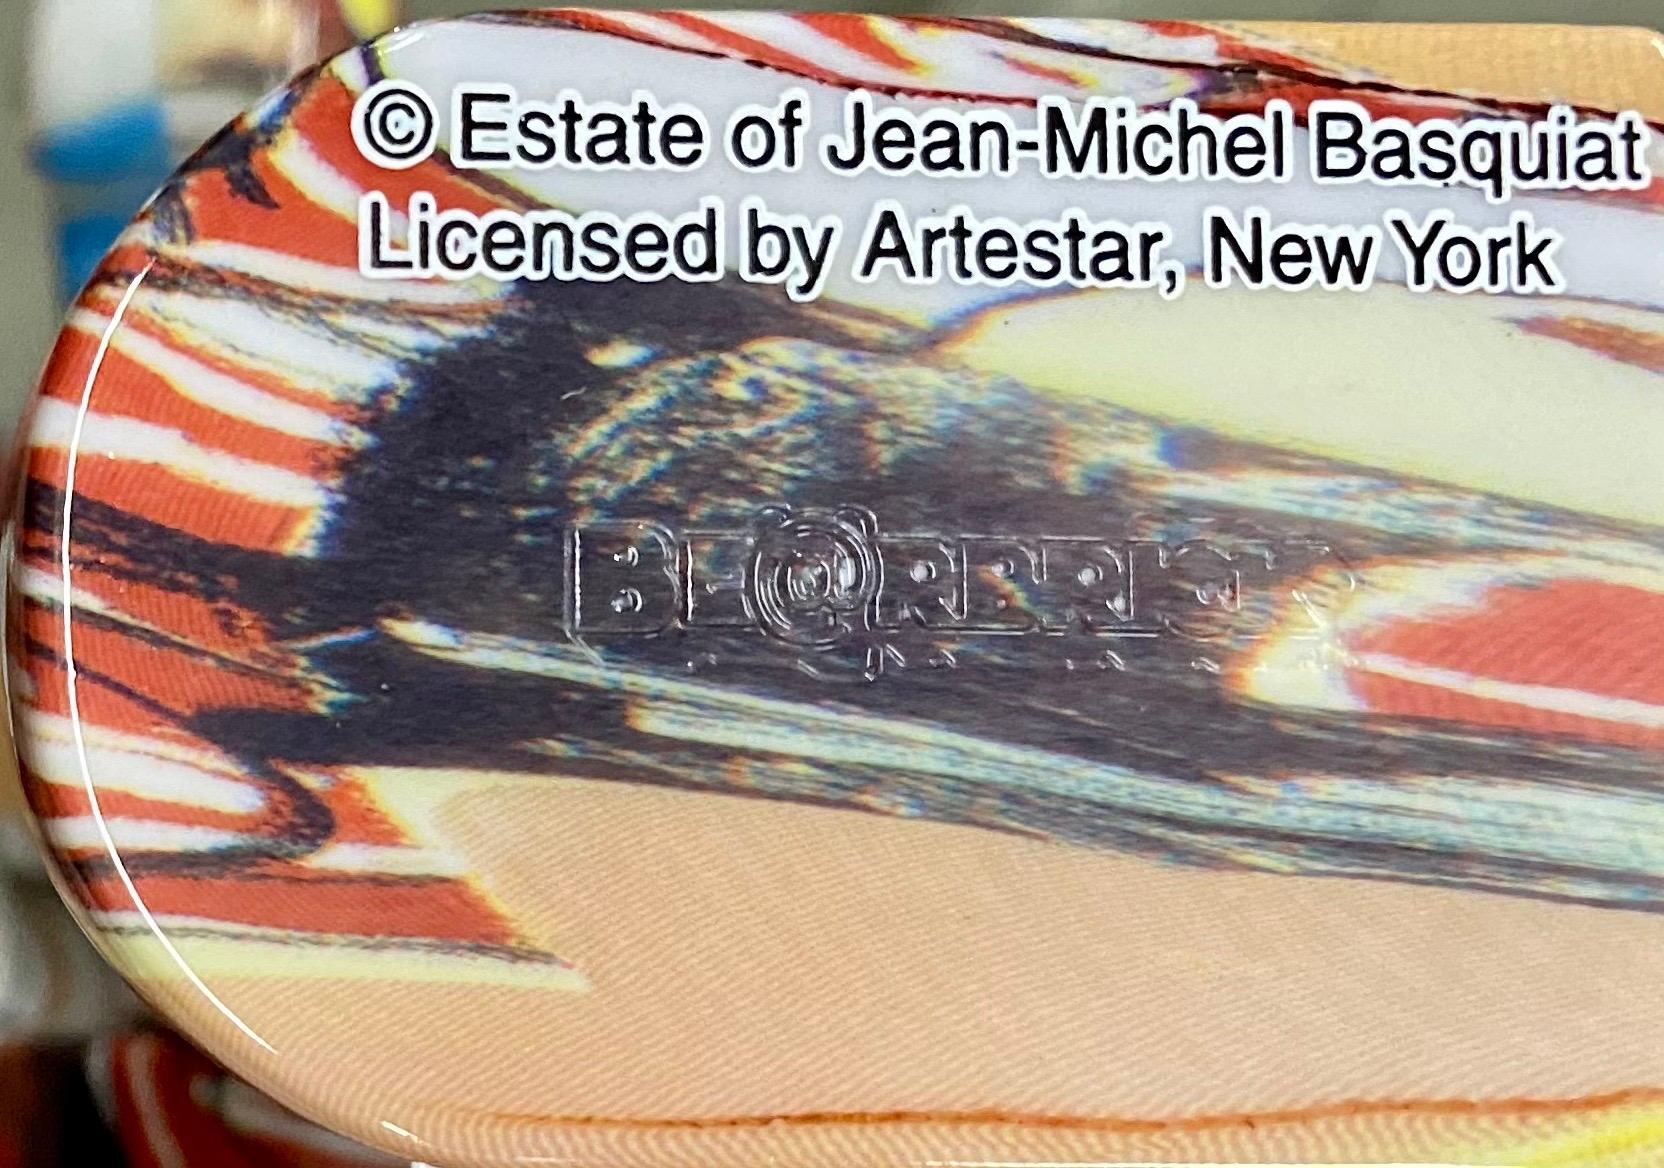 Jean-Michel Basquiat Bearbrick Vinyl Figures : Lot de deux (400% & 100%) :
Un objet de collection unique et intemporel, dont la marque et la licence ont été déposées par la succession de Jean-Michel Basquiat. L'objet de collection associé révèle des